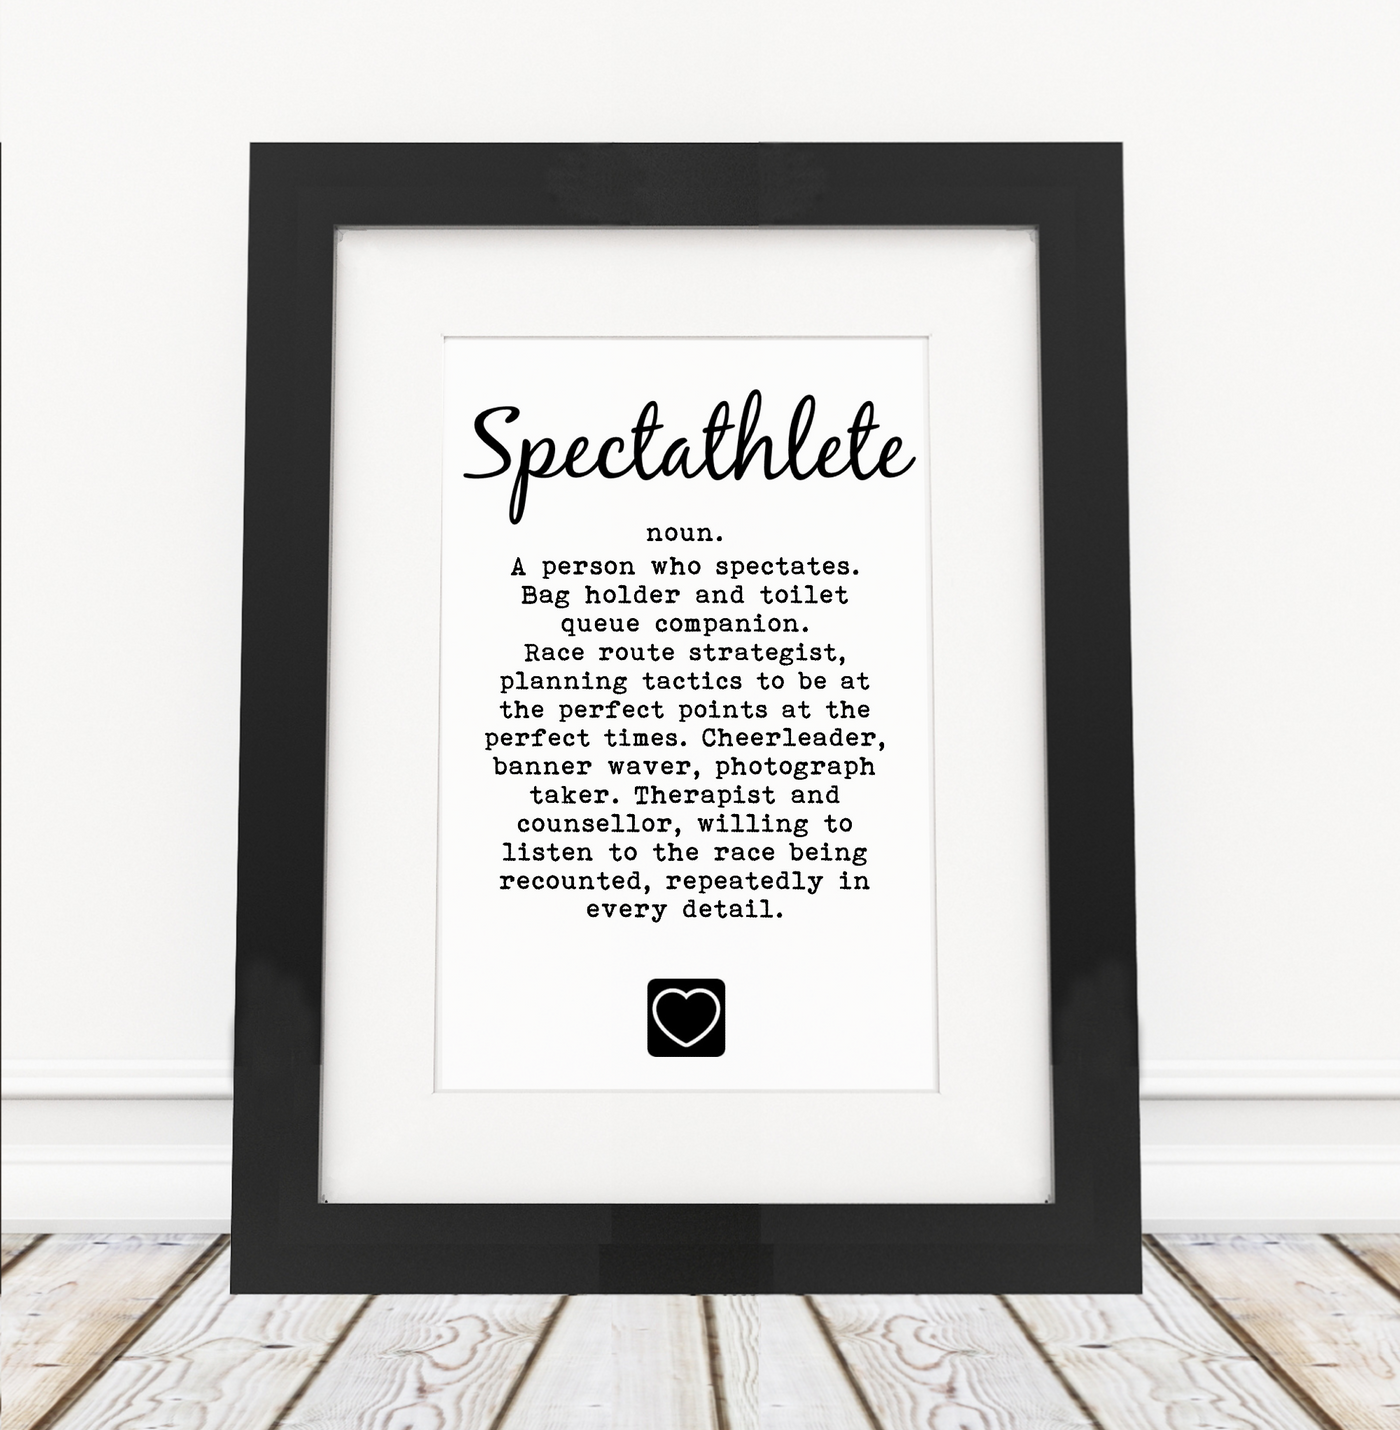 Spectathlete Definition  - Framed Print